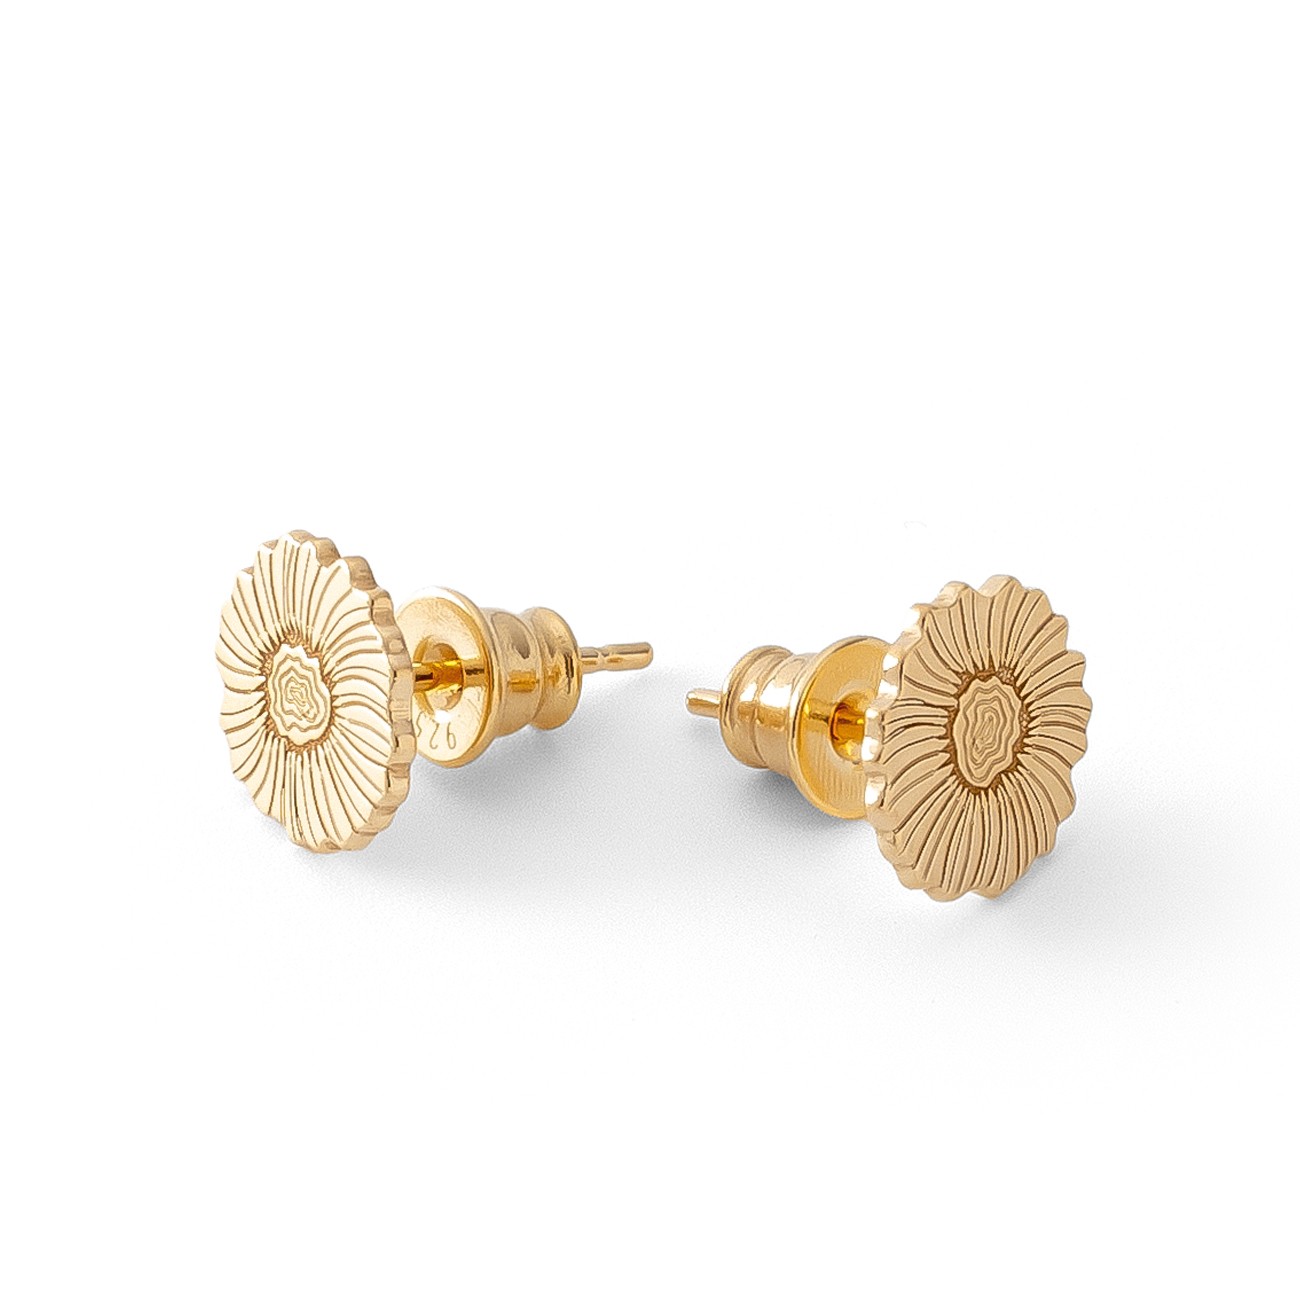 Silver poppy flower earrings